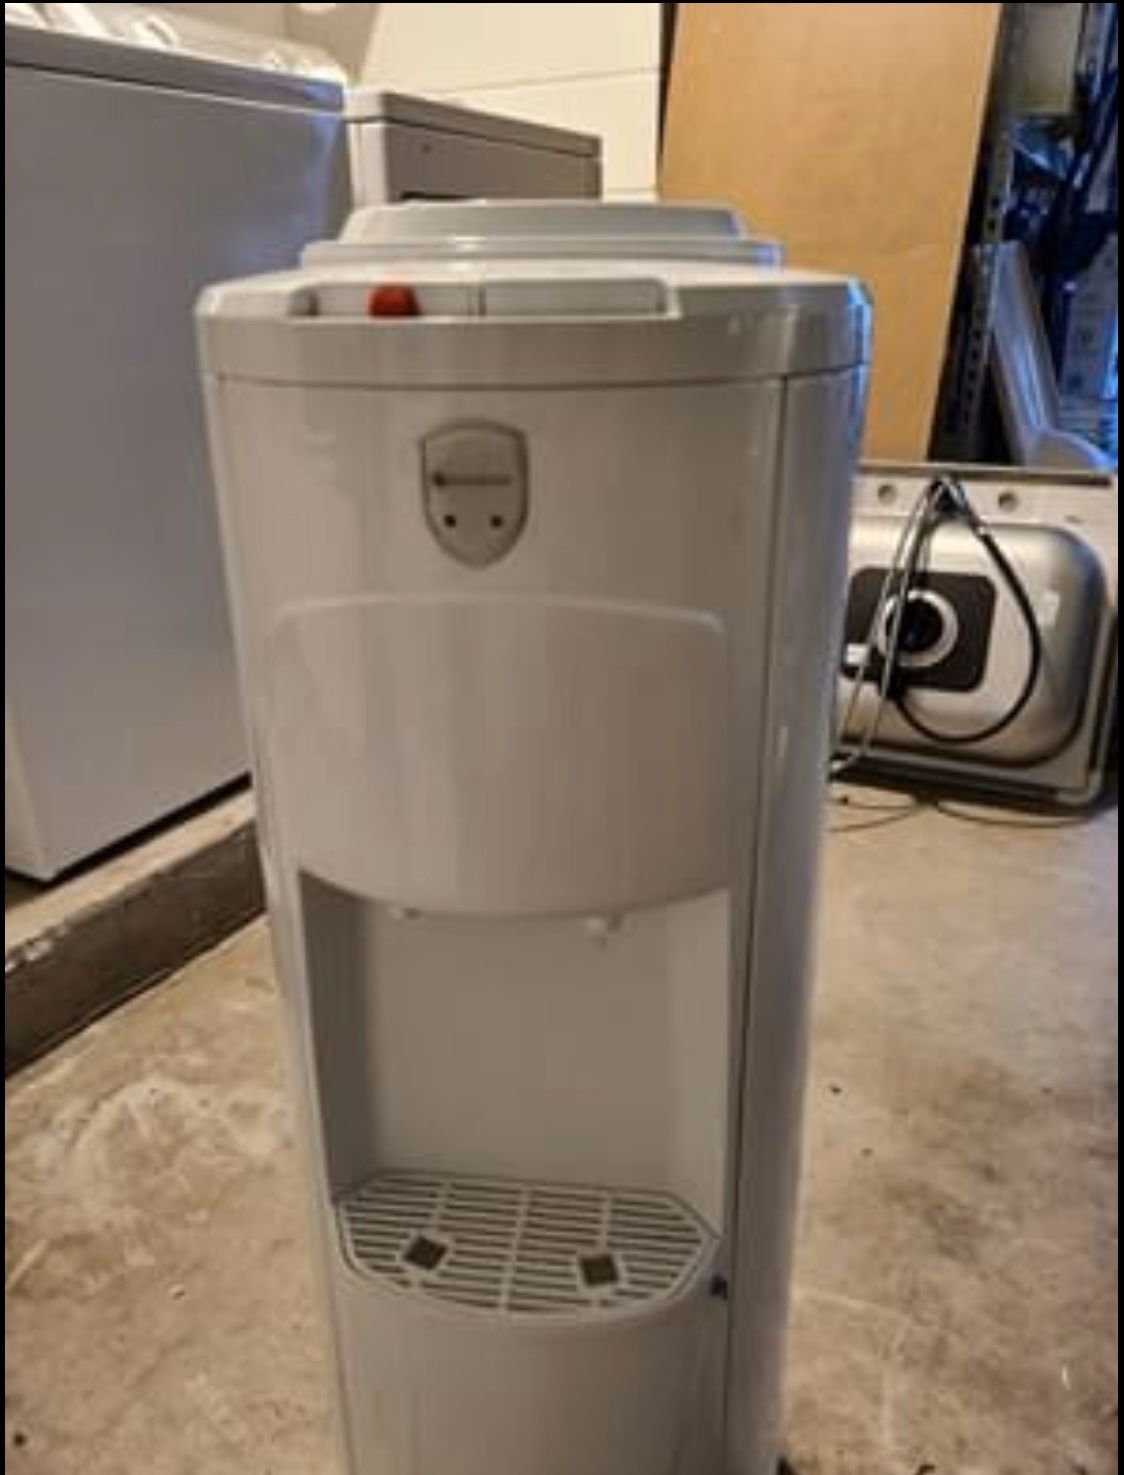 Water cooler dispenser